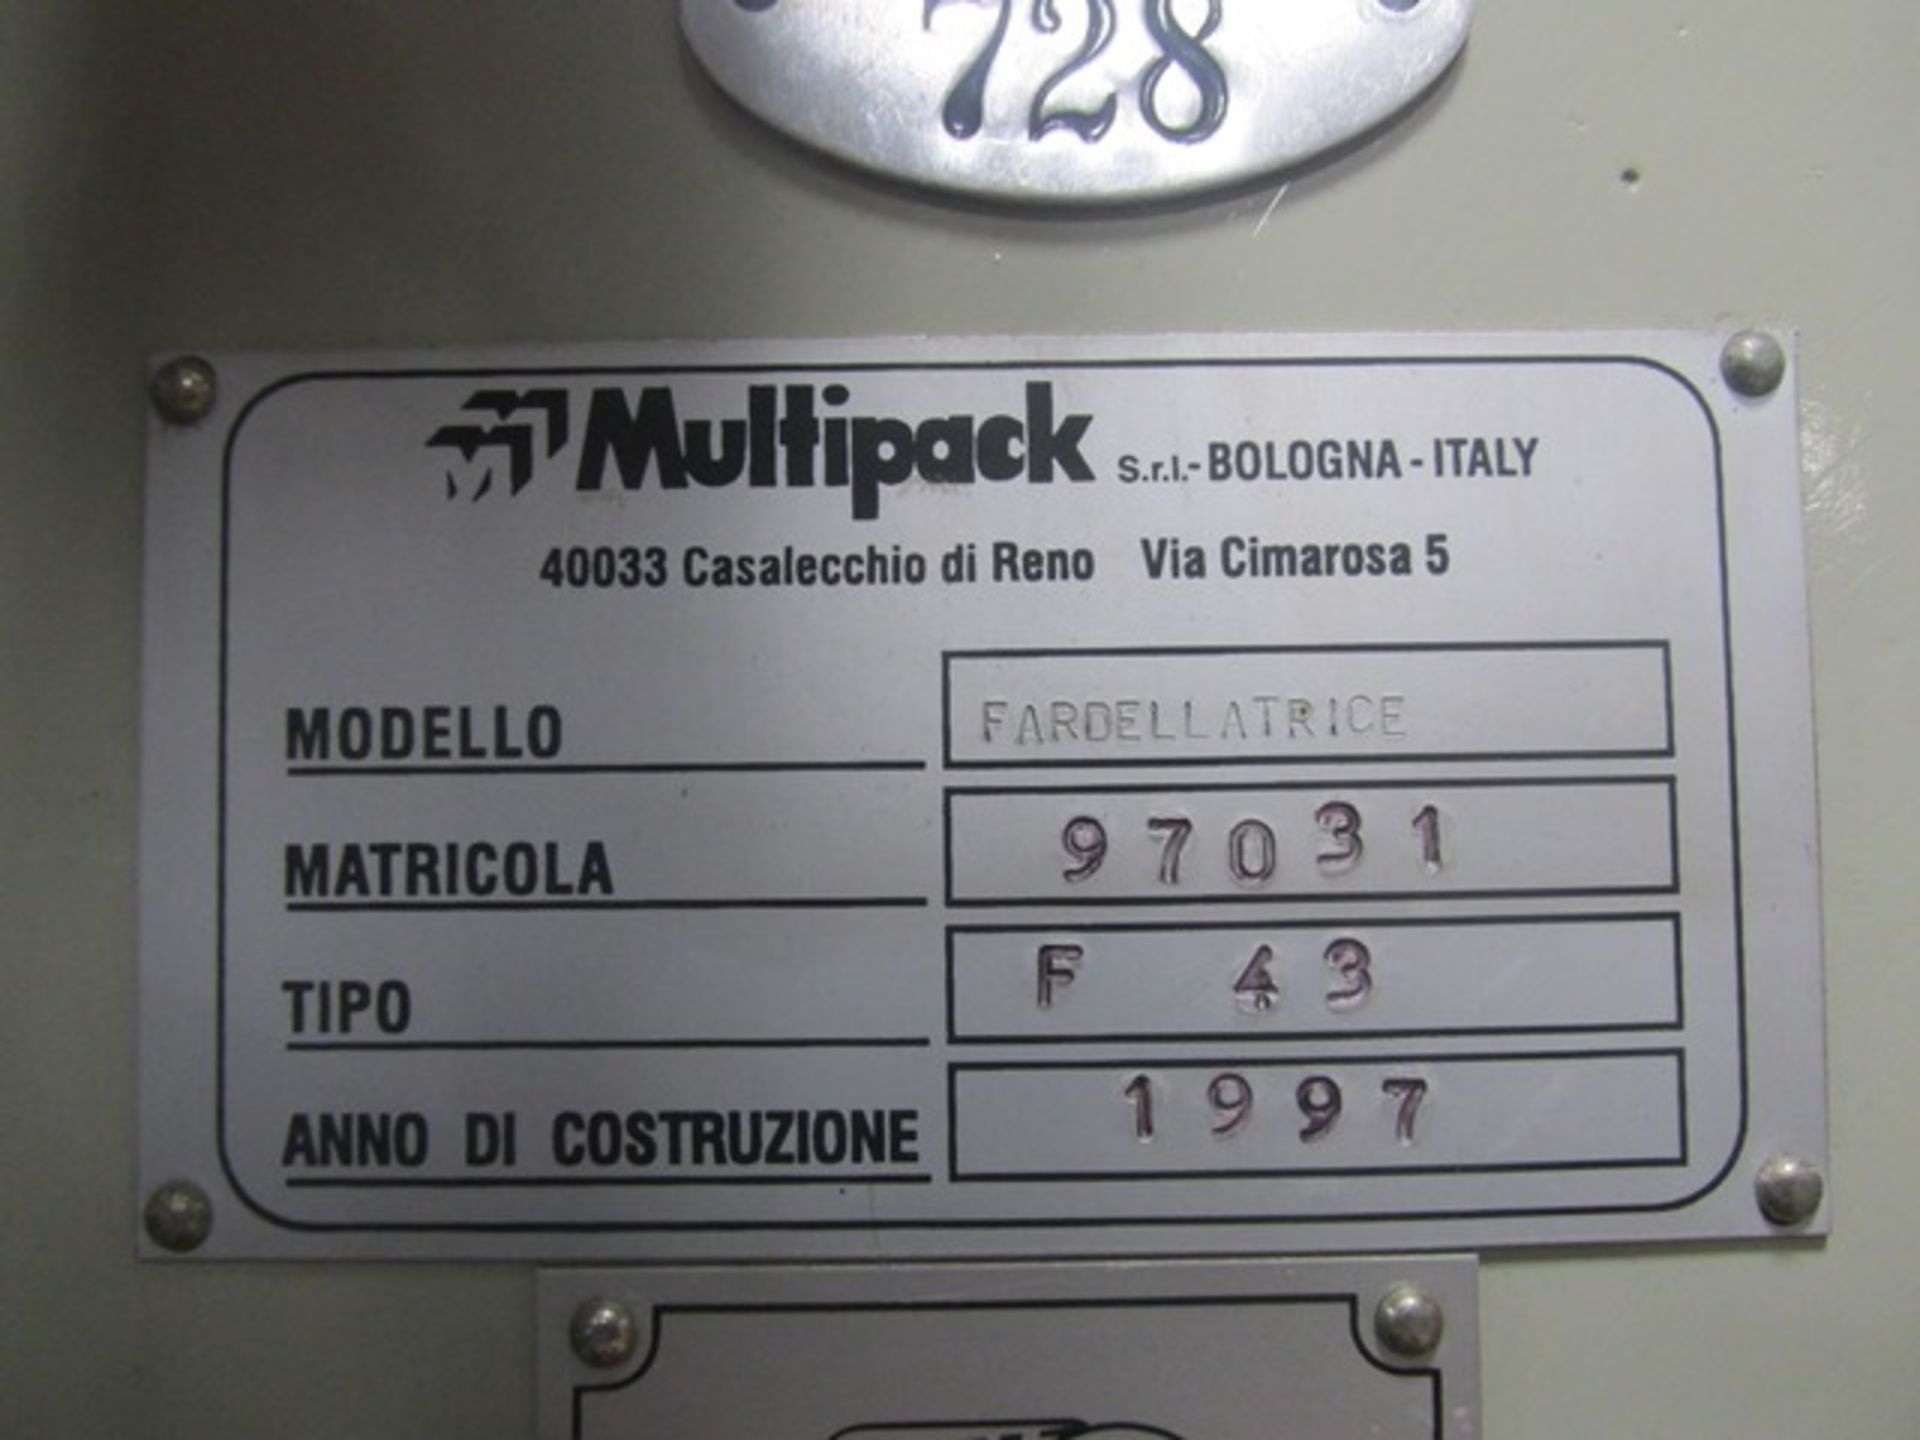 Multipack bundler, model F 43 bundler, rated up to 45 bundles/minute - Image 2 of 19